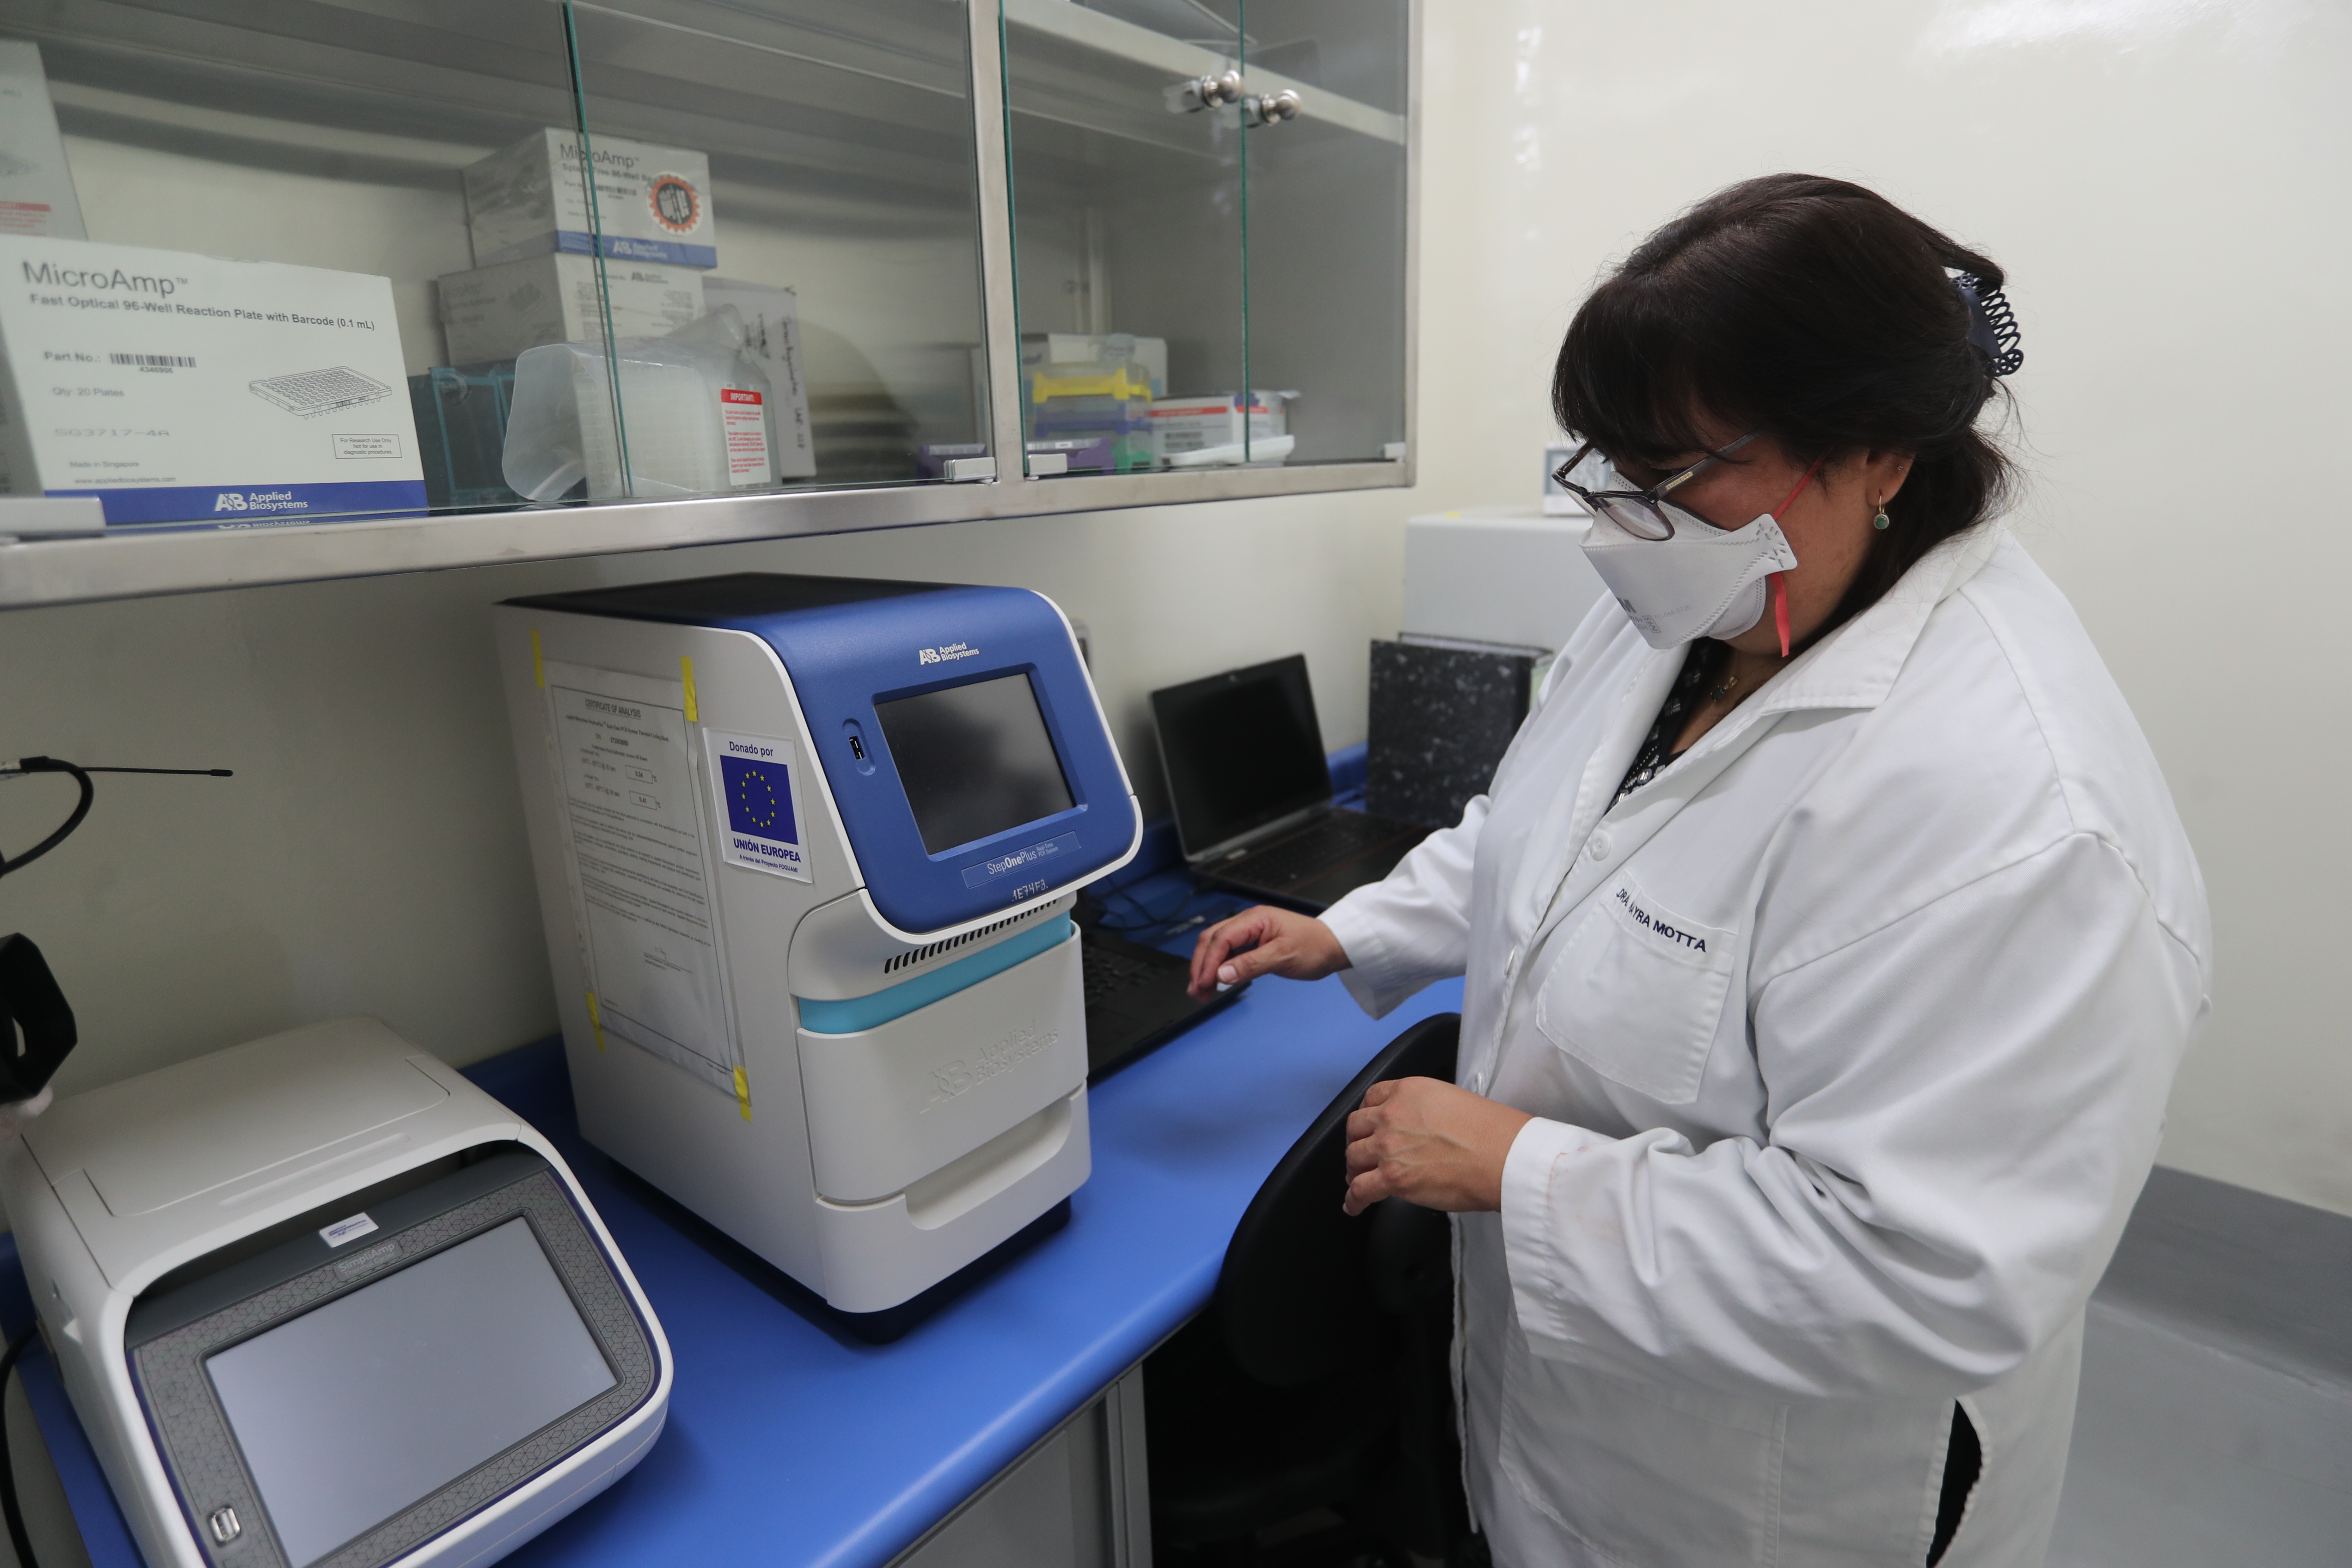 Laboratorio de la universidad de San Carlos, donde podrán practicar pruebas de Coronavirus.
(Foto Prensa Libre: Érick Ávila            